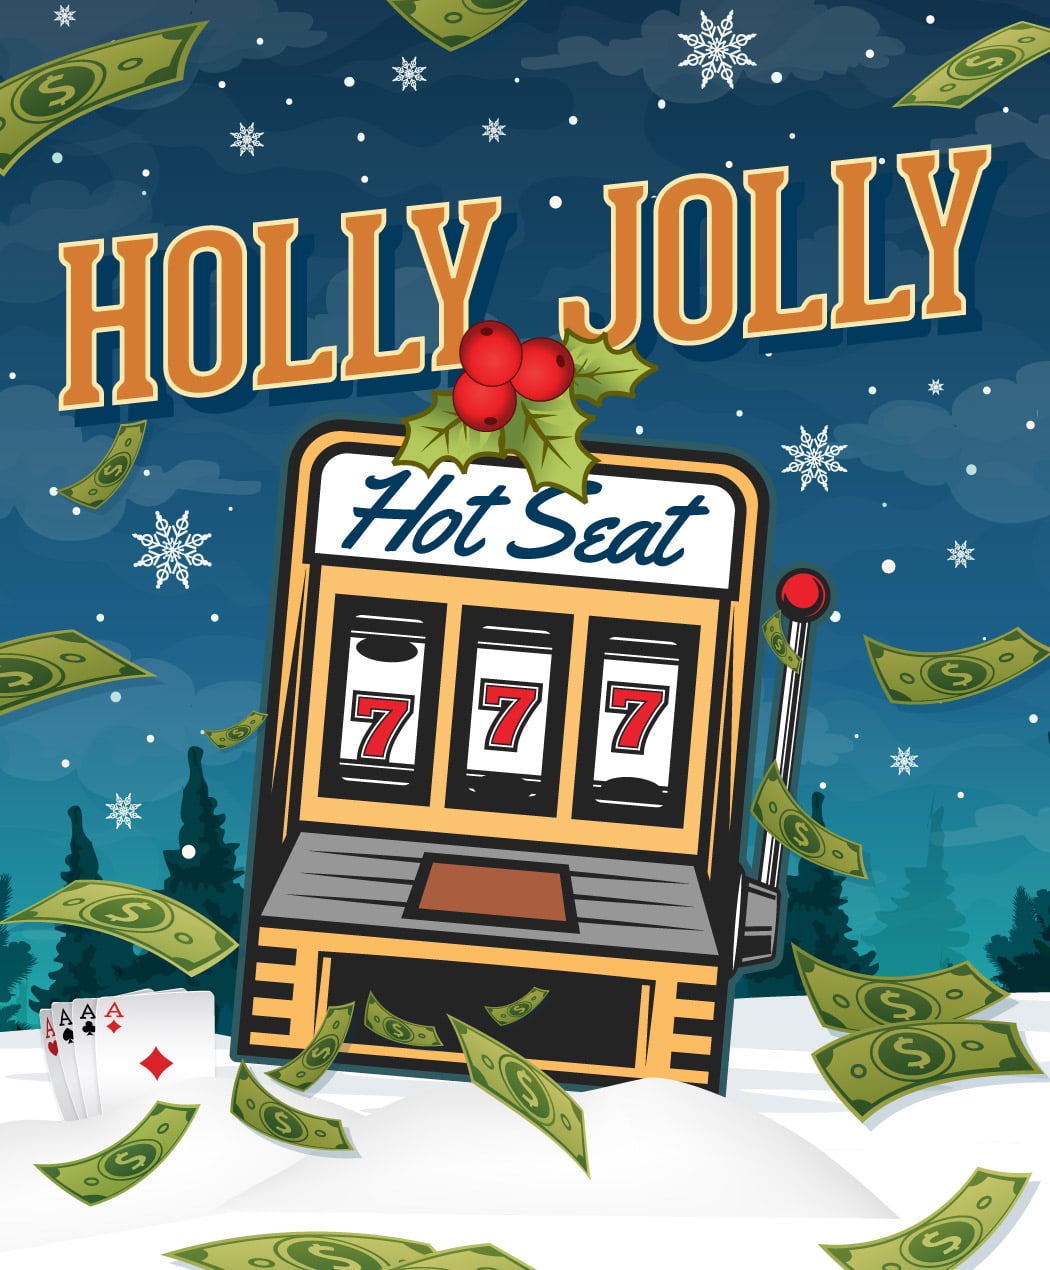 Holly Jolly Hot Seat